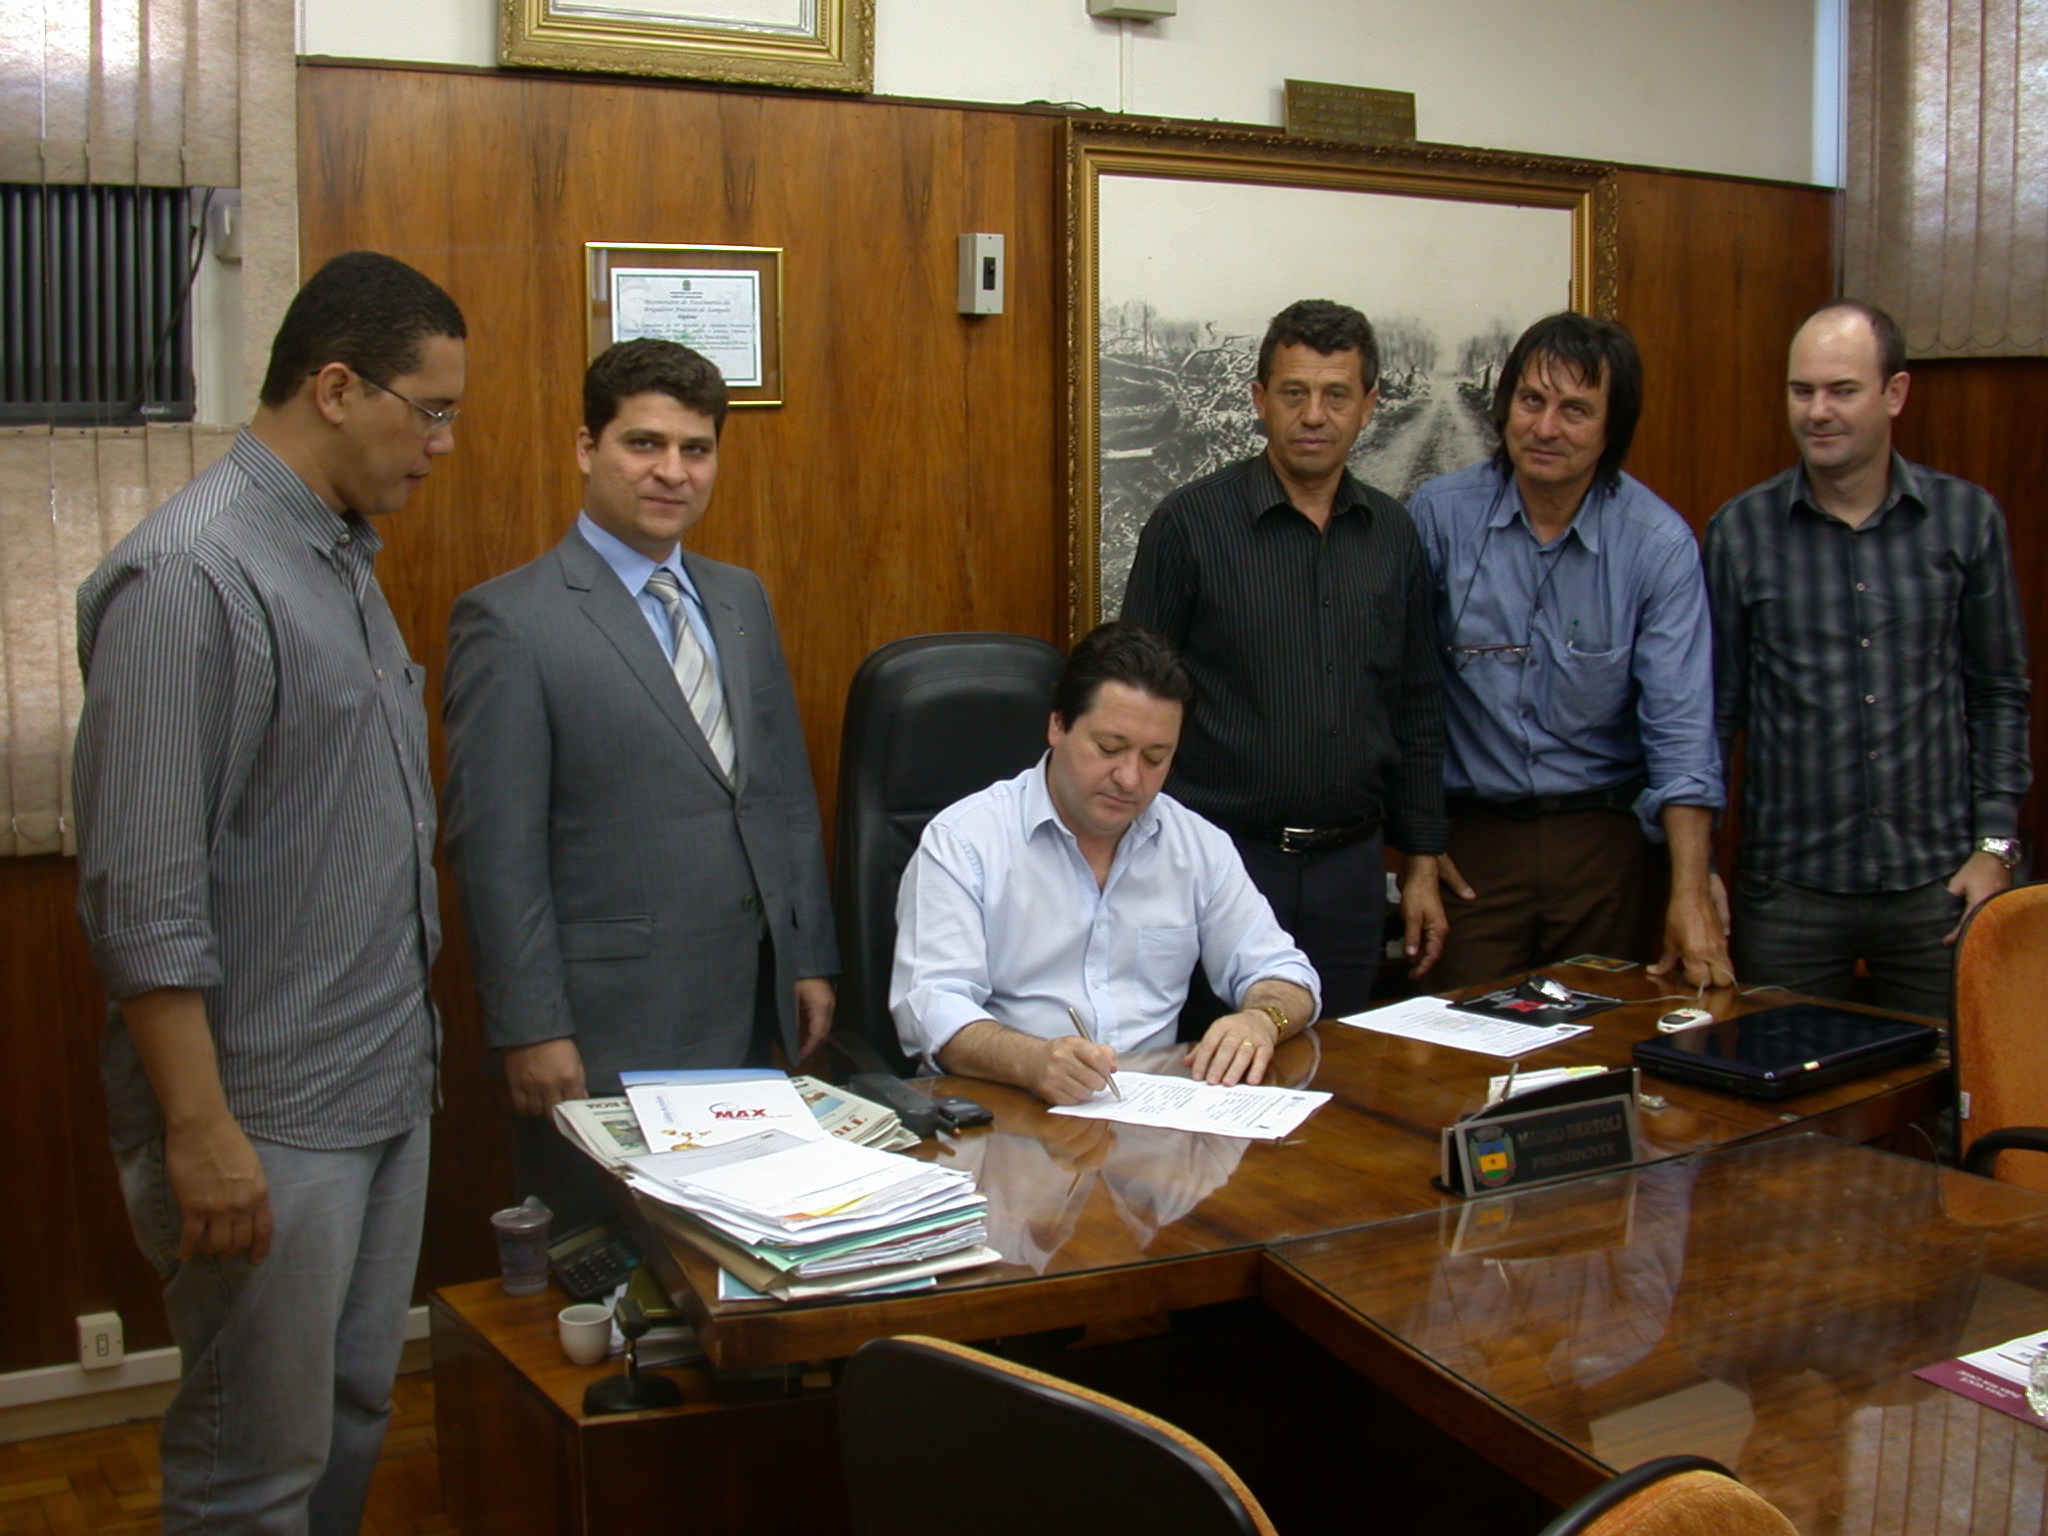 Câmara de Apucarana assina termo aderindo ao Interlegis II